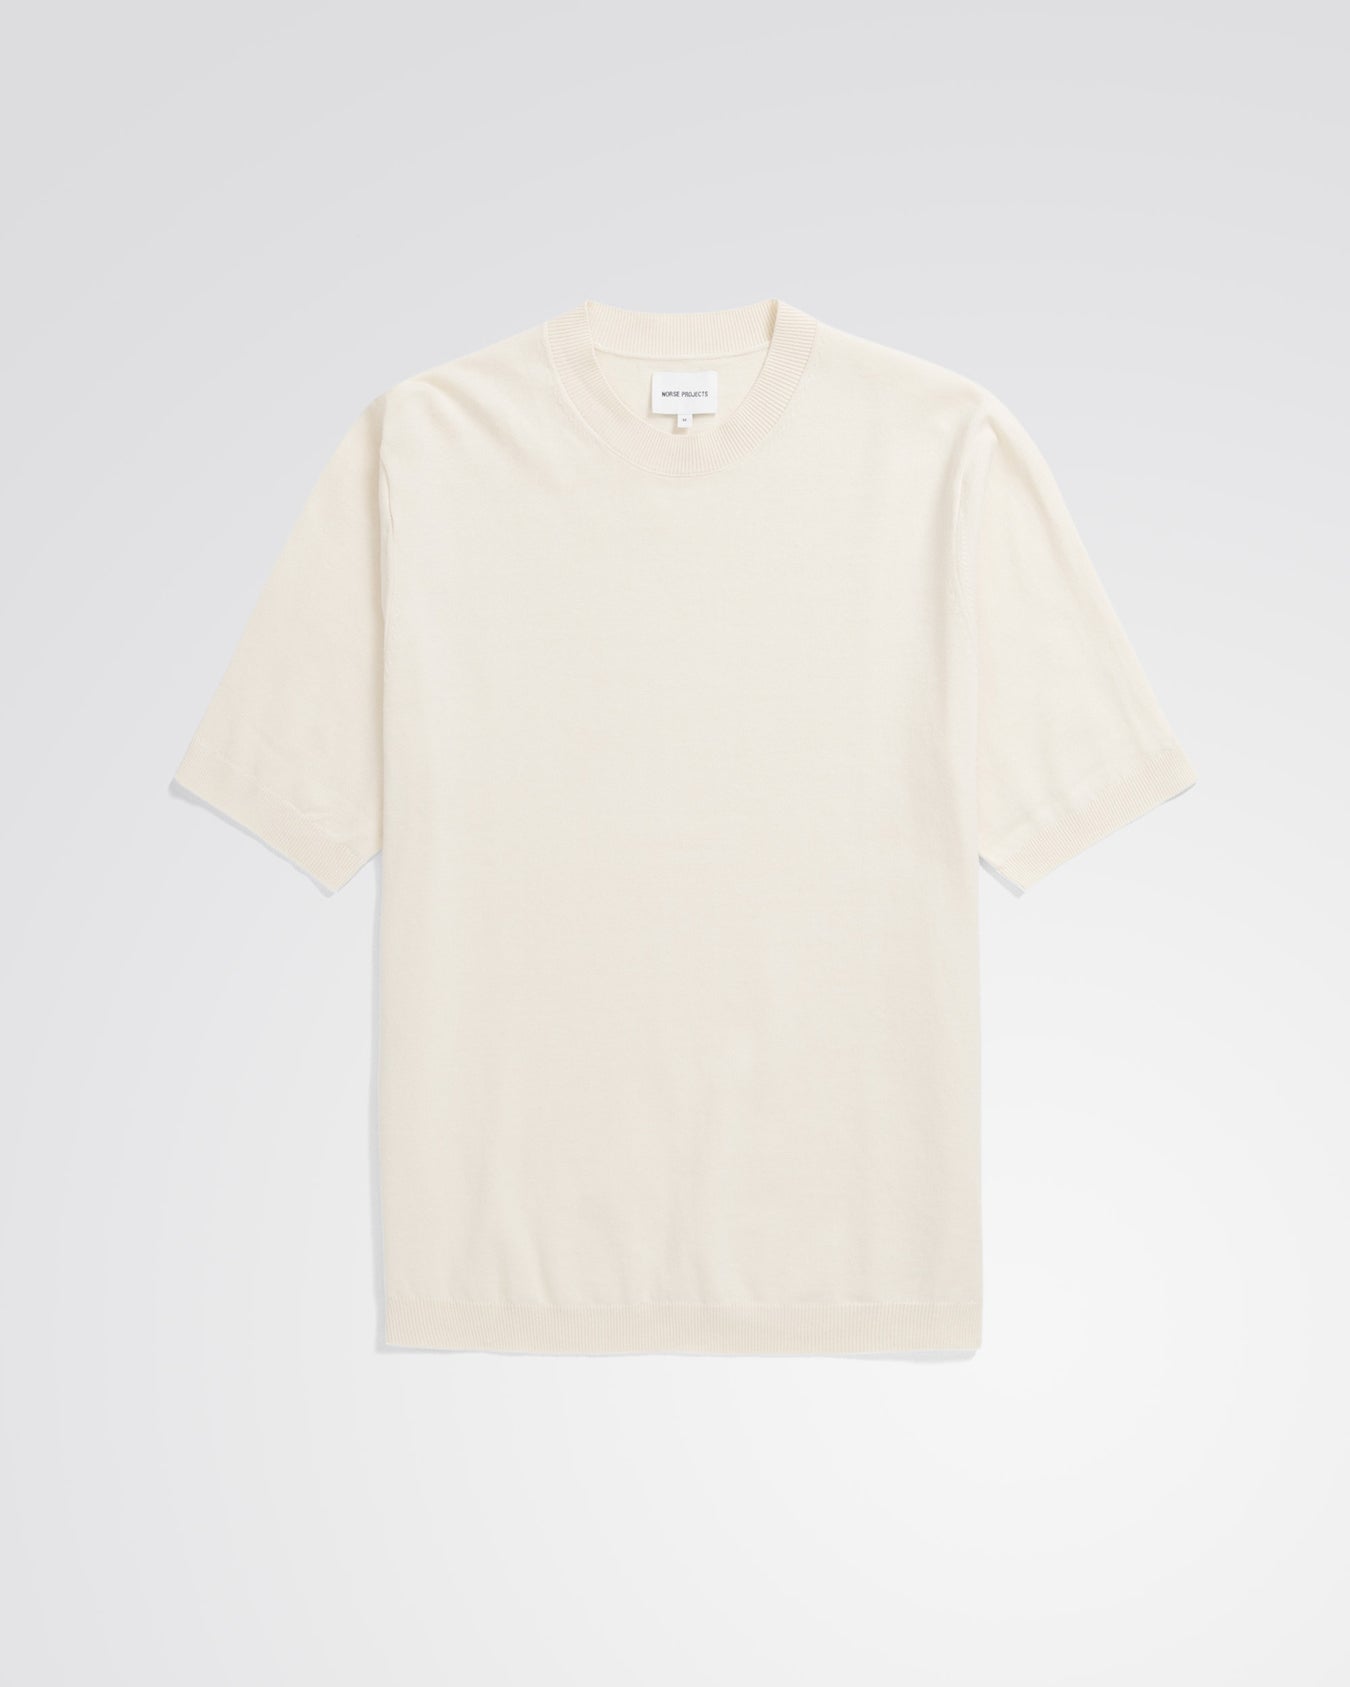 Rhys Cotton Linen T-shirt - Kit White